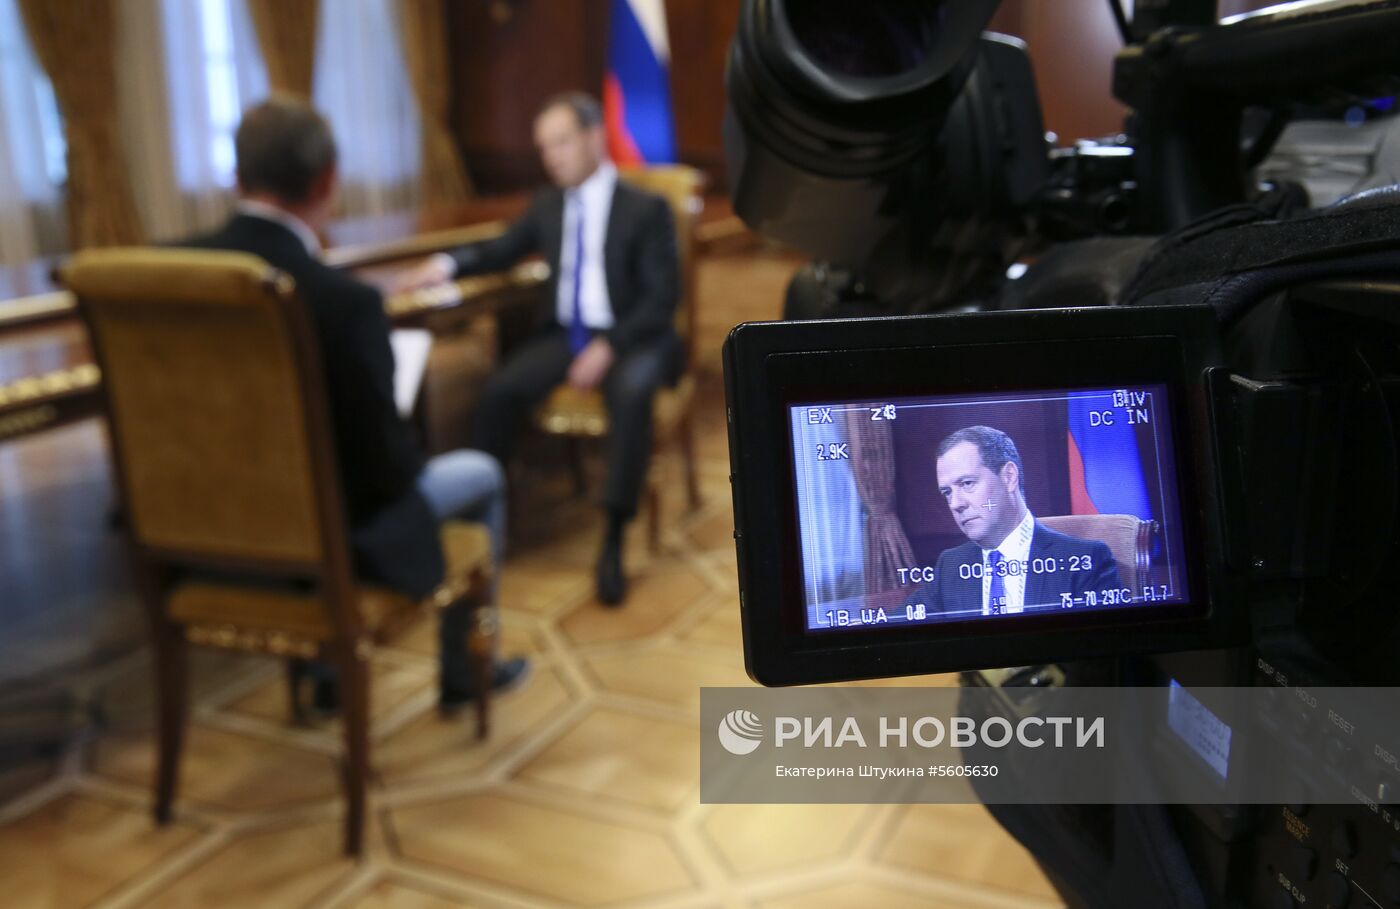 Интервью премьер-министра РФ Д. Медведева газете «Коммерсантъ»